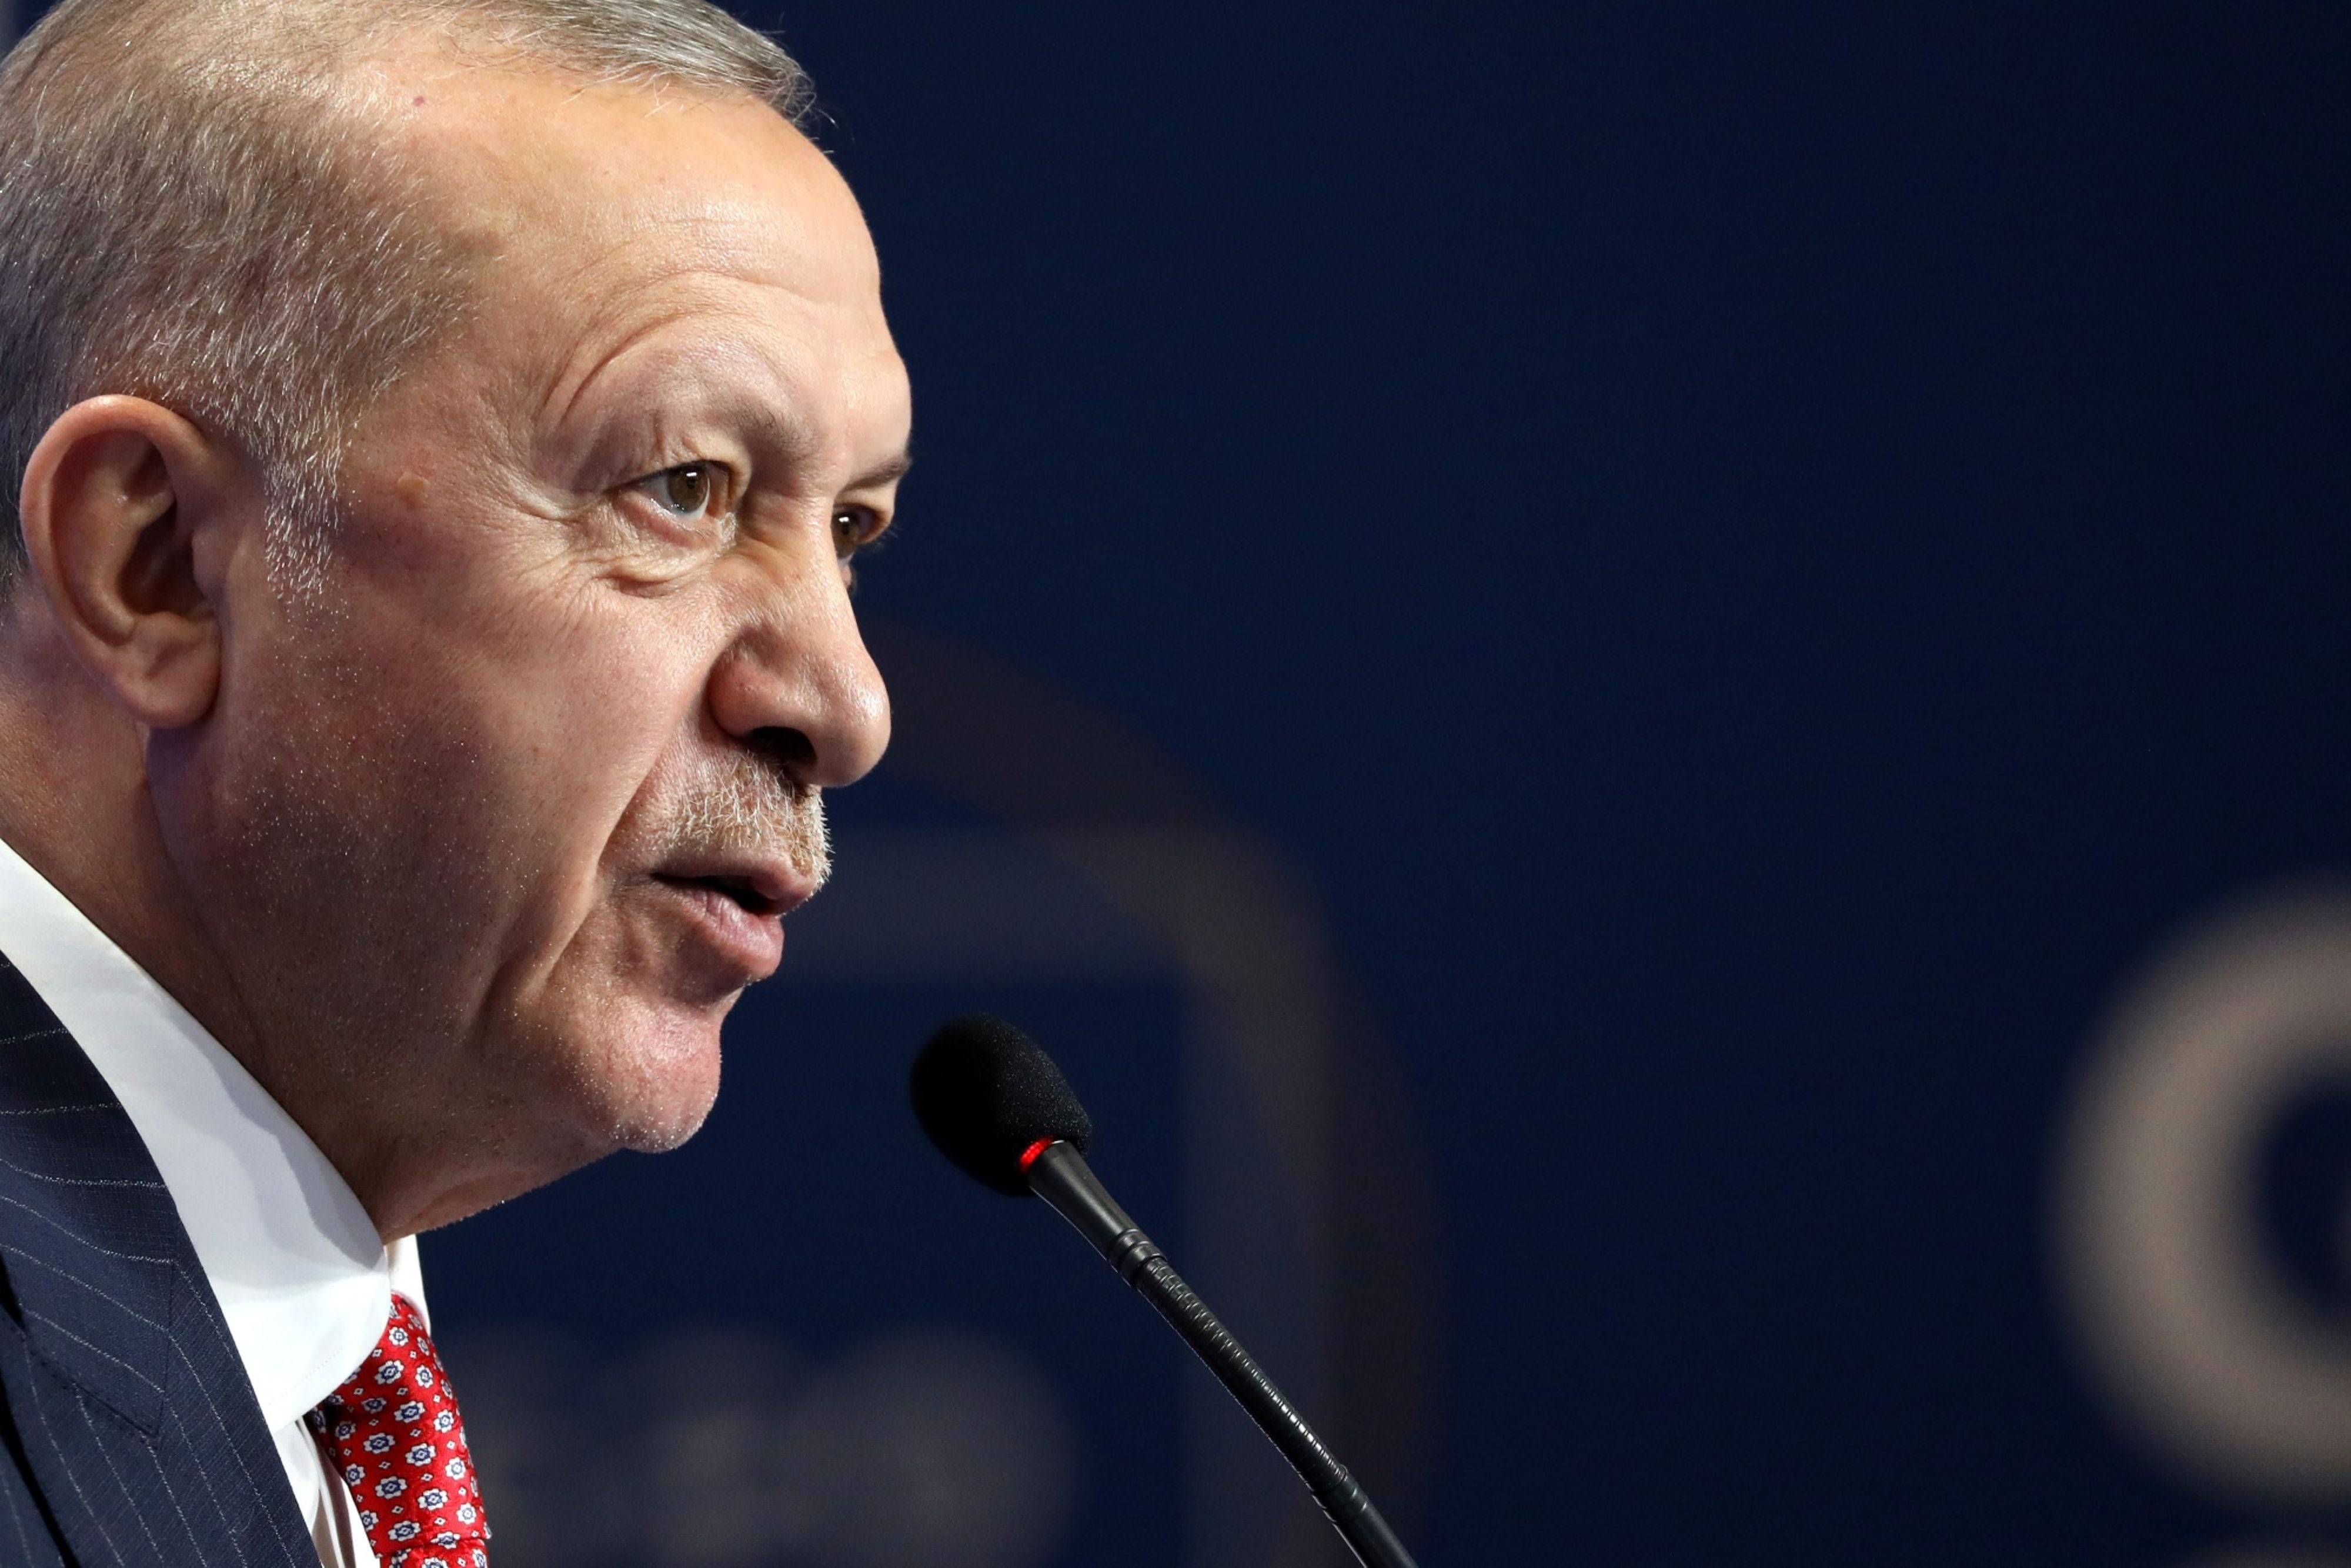 Primer ‘pero’ a Suecia y Finlandia en la OTAN: Turquía rechaza su entrada por política prokurda